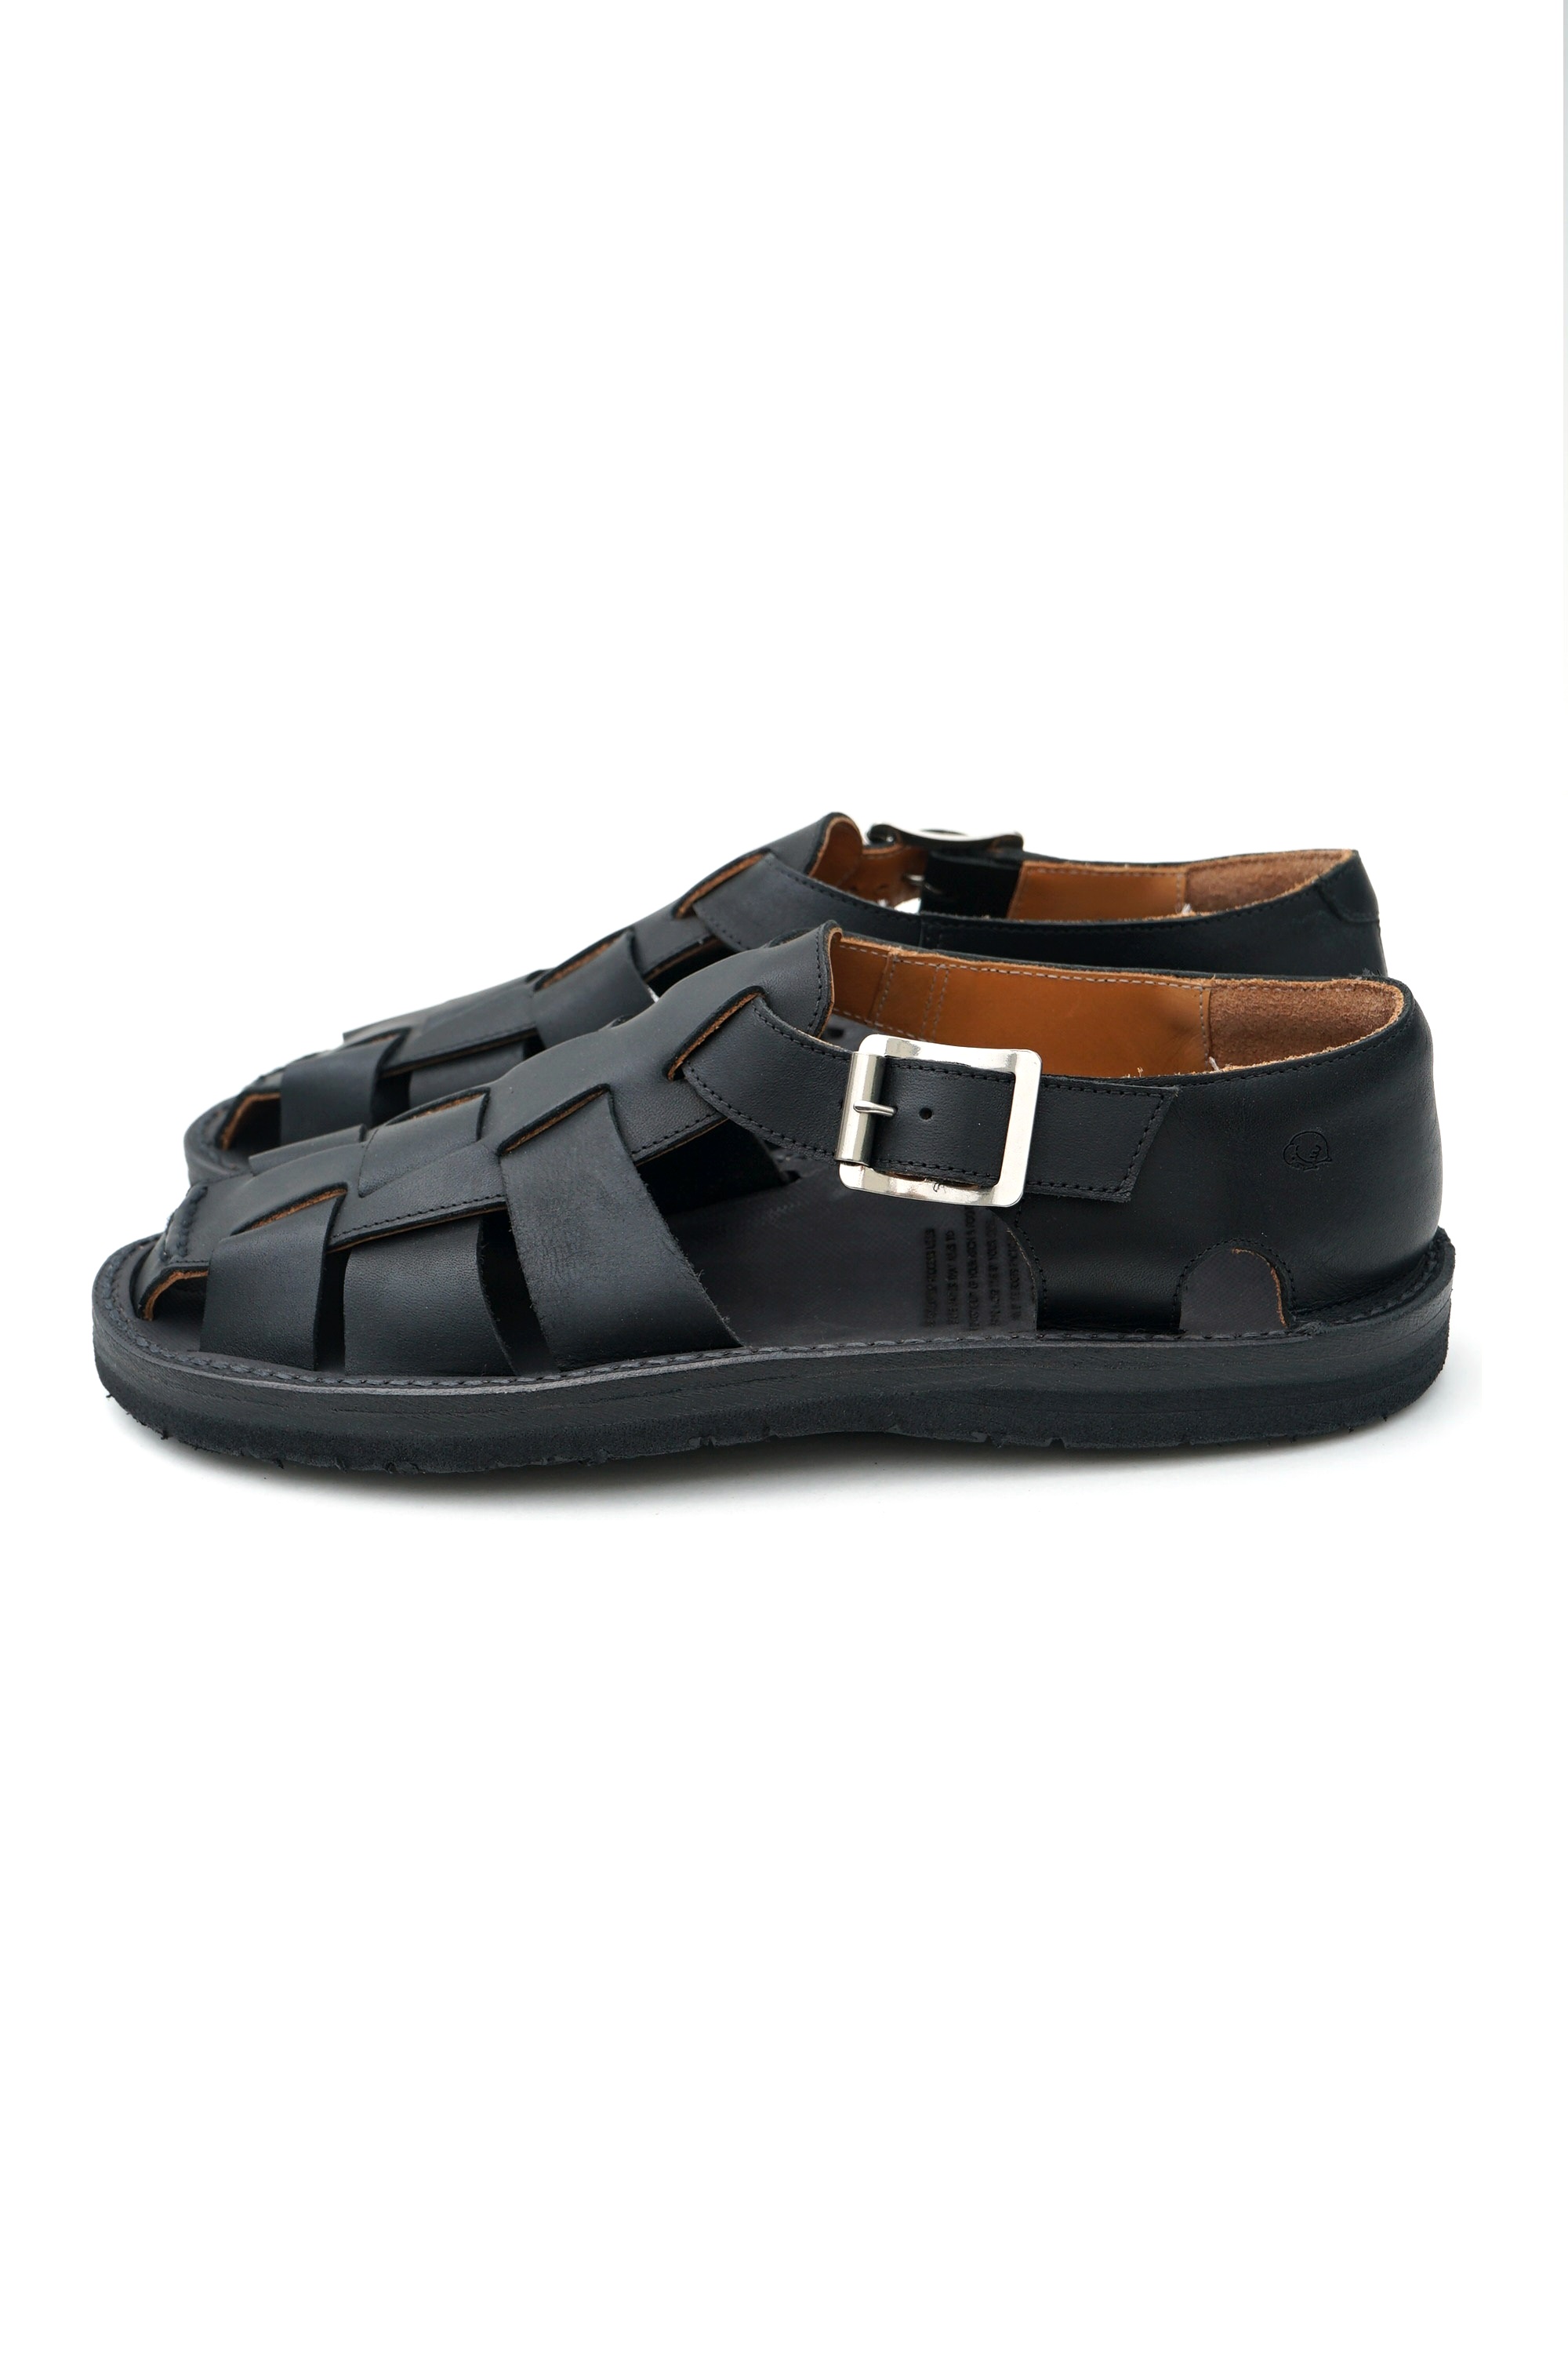 Tokyo Sandals(トーキョーサンダル) “GURKA SANDAL” #TS-C15 / BLACK